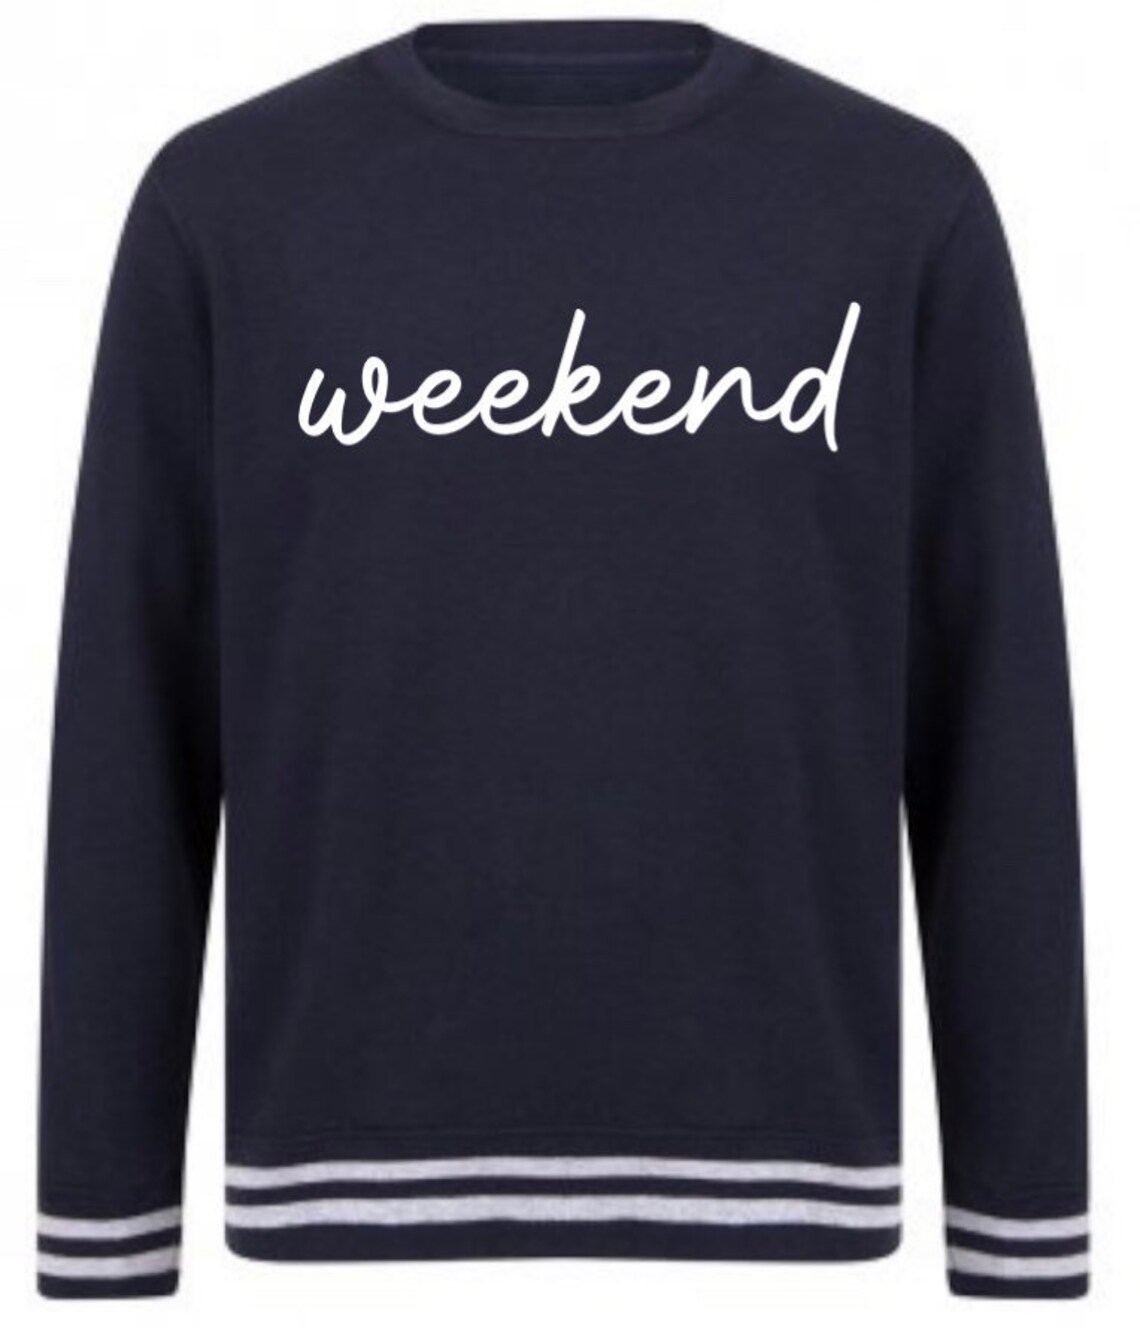 Weekend Sweater Weekend Sweatshirt Womens Sweater Striped - Etsy